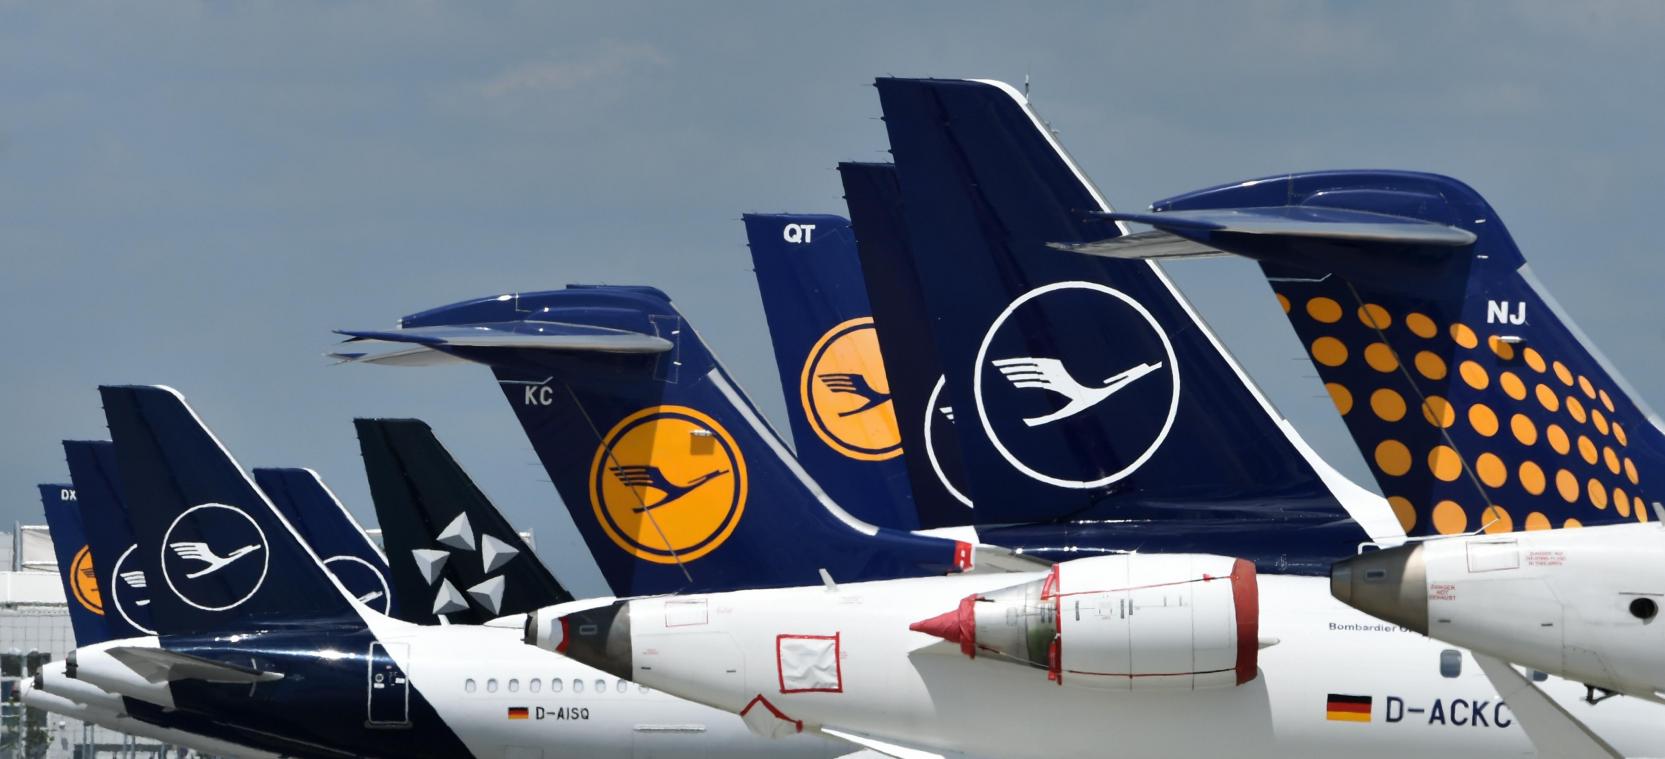 <p>Lufthansa tief in roten Zahlen - Konzern kündigt großen Umbau an</p>
